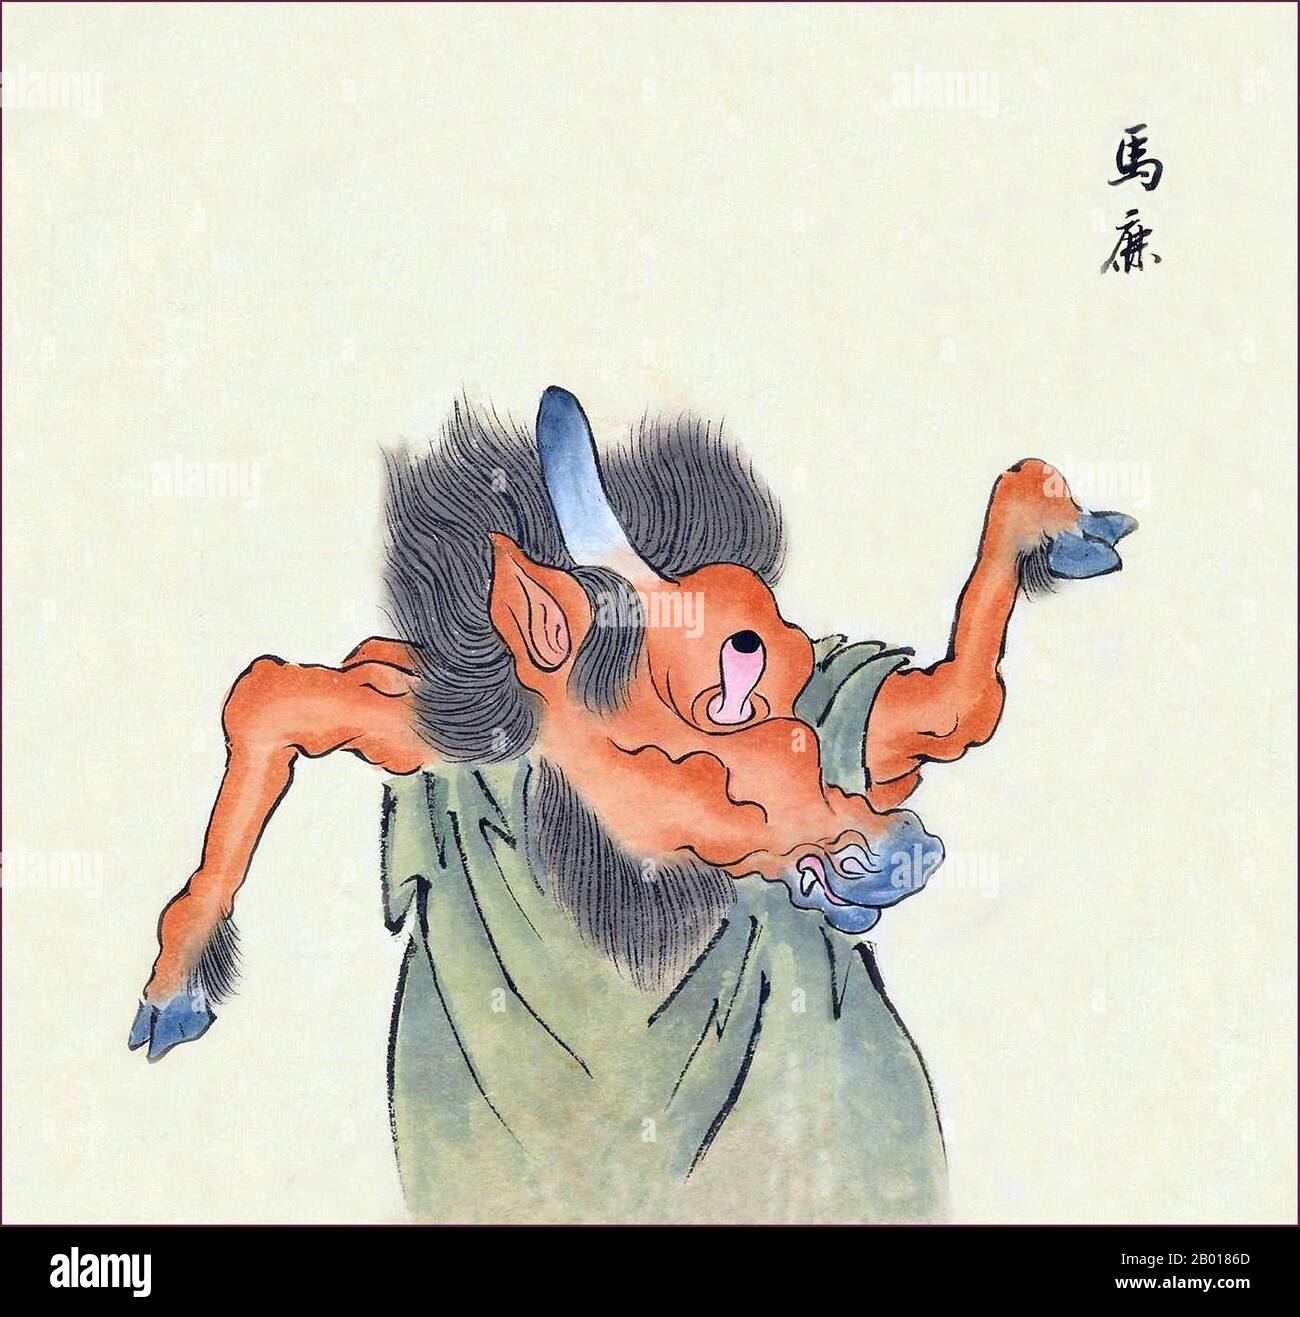 Japan: Die Uma-Shika ist ein pferdeähnliches Monster mit einem Horn auf dem Kopf und einem einzigen auswölbten Auge. Aus der Bakemono Zukushi-Monsterrolle, Edo-Zeit (1603-1868), 18th-19th Jahrhundert. Stockfoto